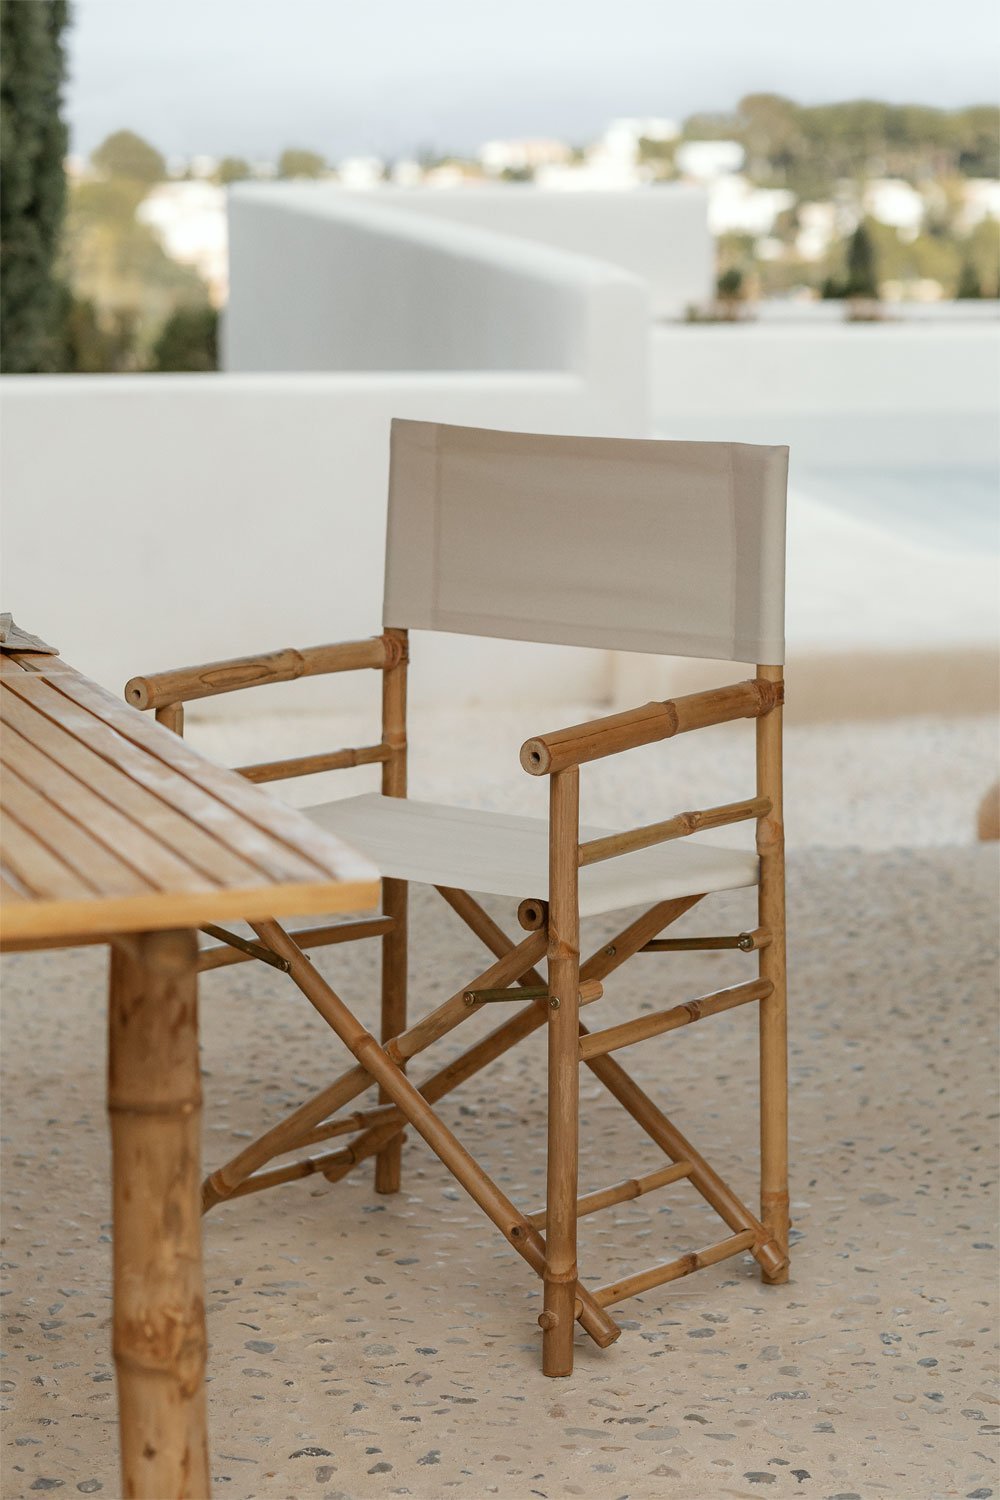 Składane krzesło reżyserskie z bambusa dla Garden Woody, obrazek w galerii 1